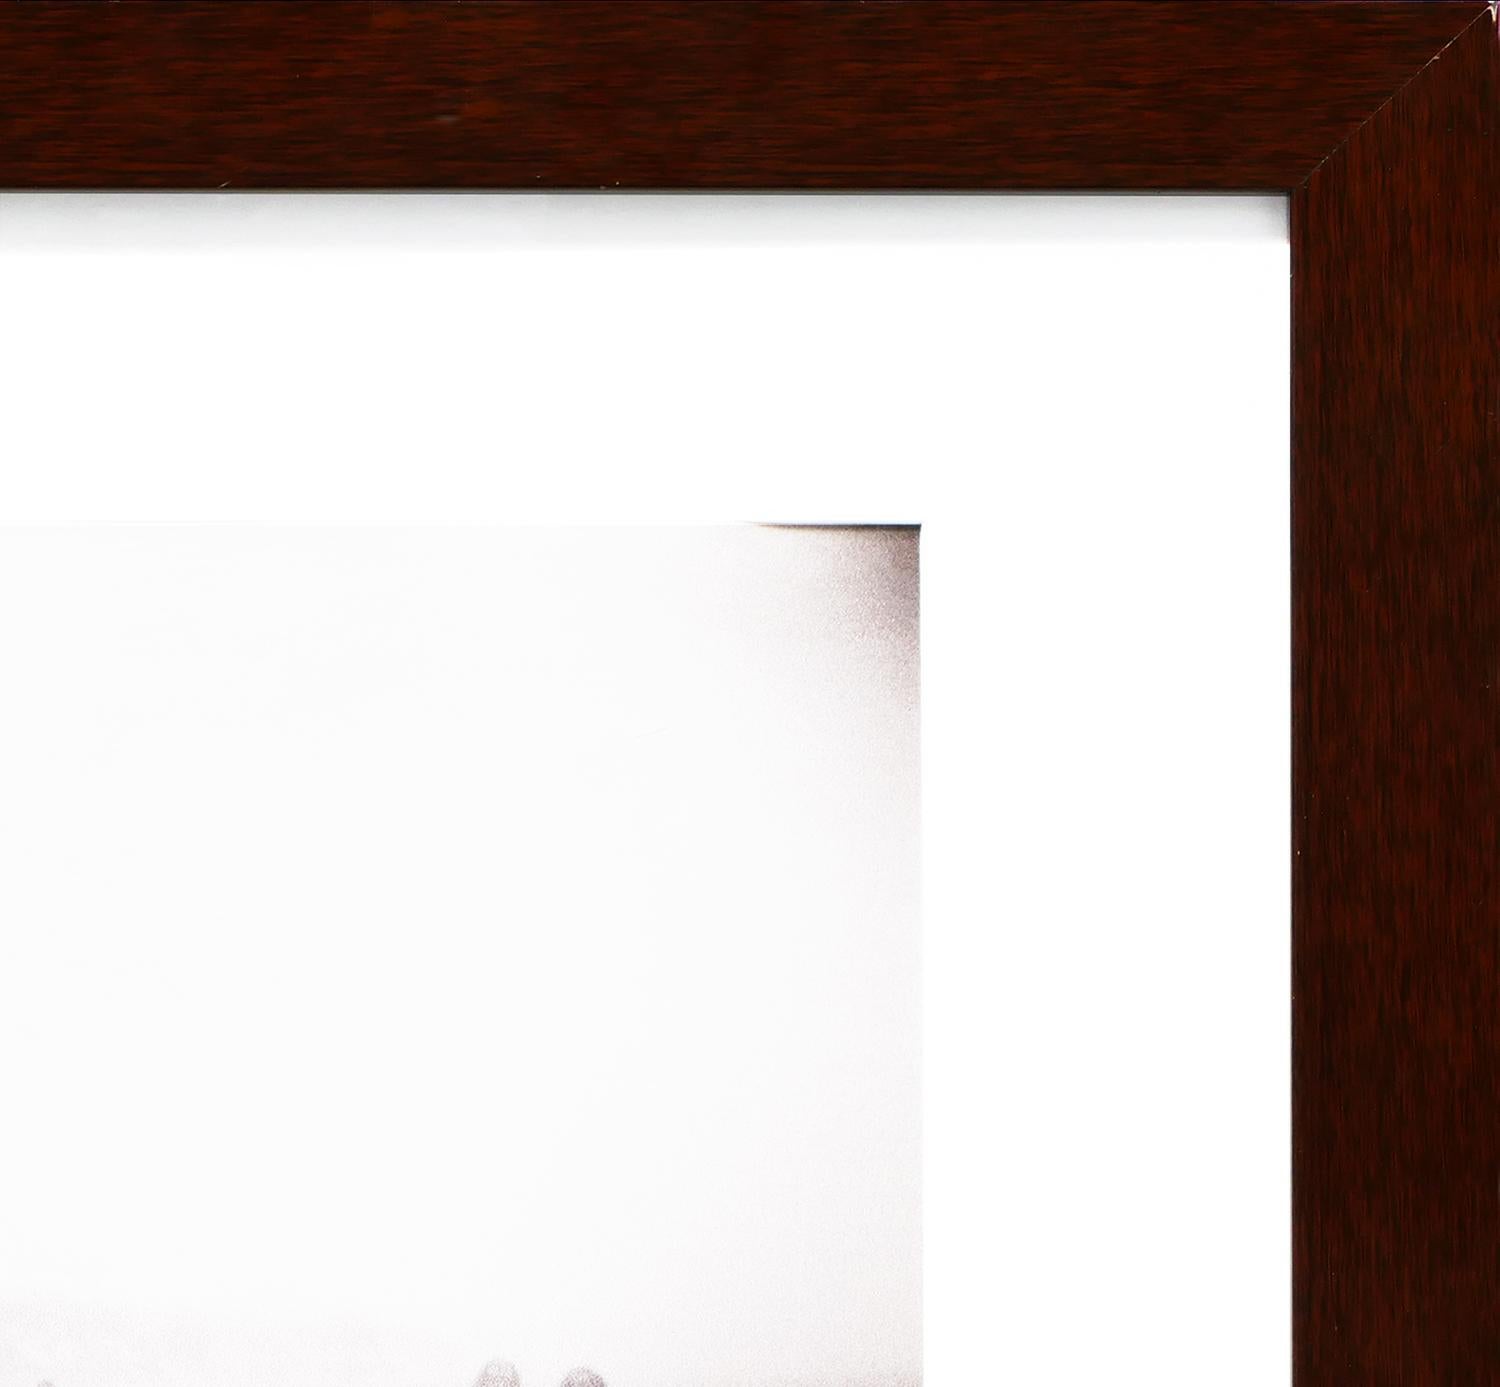 Zeitgenössische monochromatische Fotografie des zeitgenössischen Fotografen Matt Dahl. Das Foto zeigt drei Hauptfiguren, die jeweils doppelt erscheinen, was durch einen Belichtungstrick der Kamera erreicht wird. Die Figuren befinden sich in einer